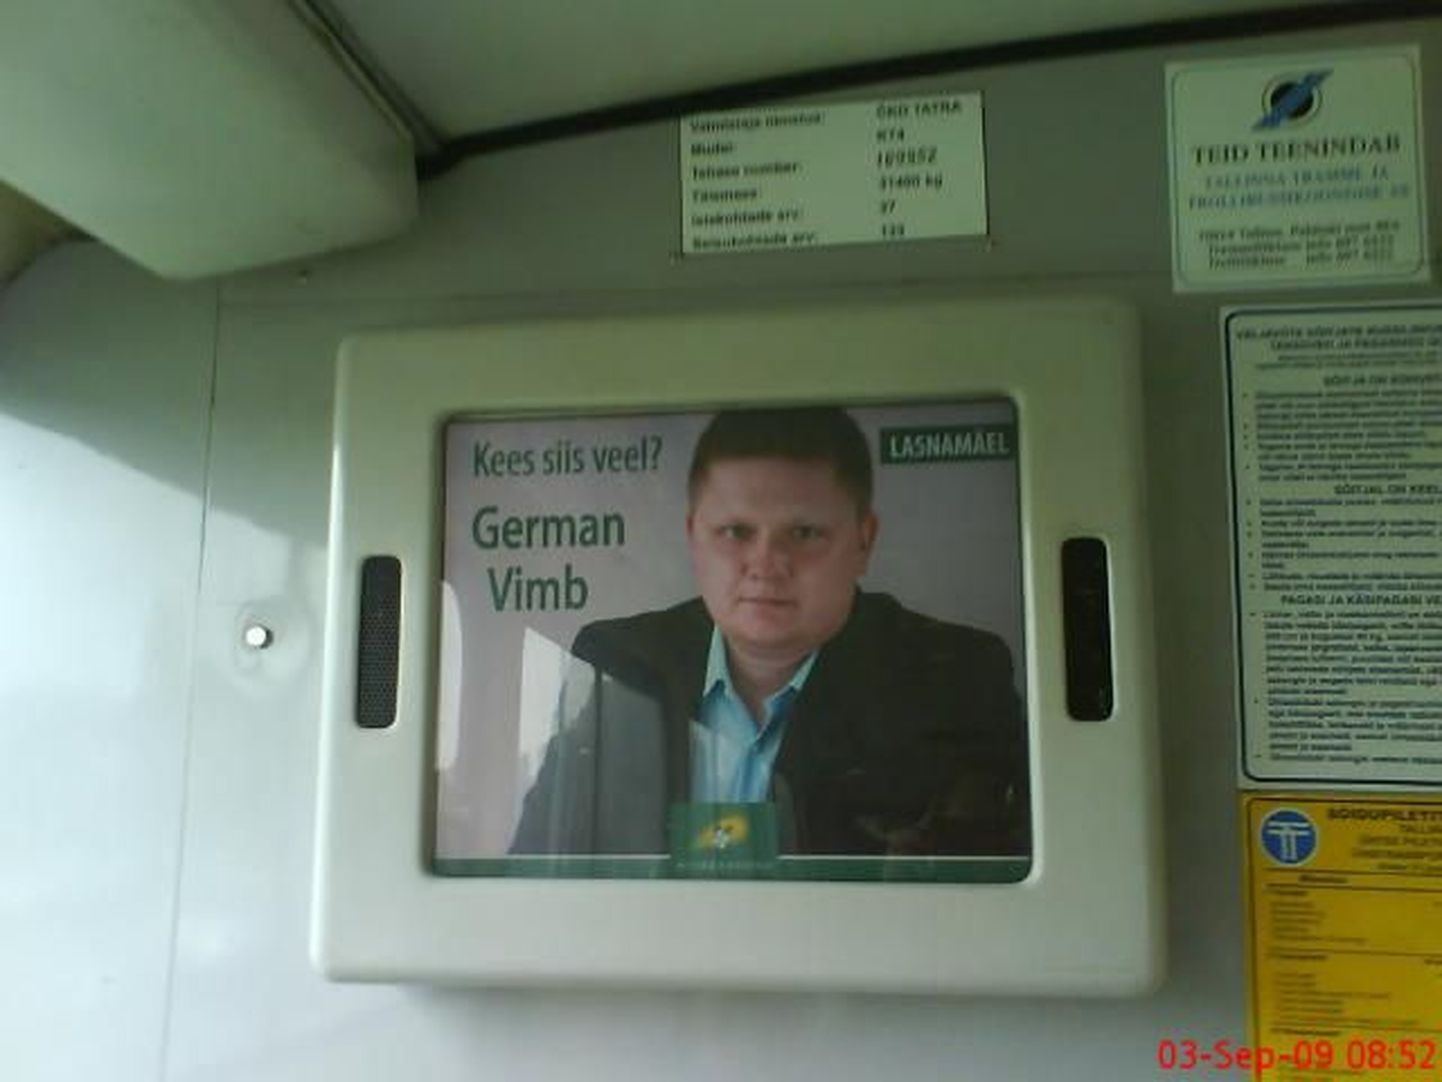 German Vimbi valimisreklaam Kopli trammis.